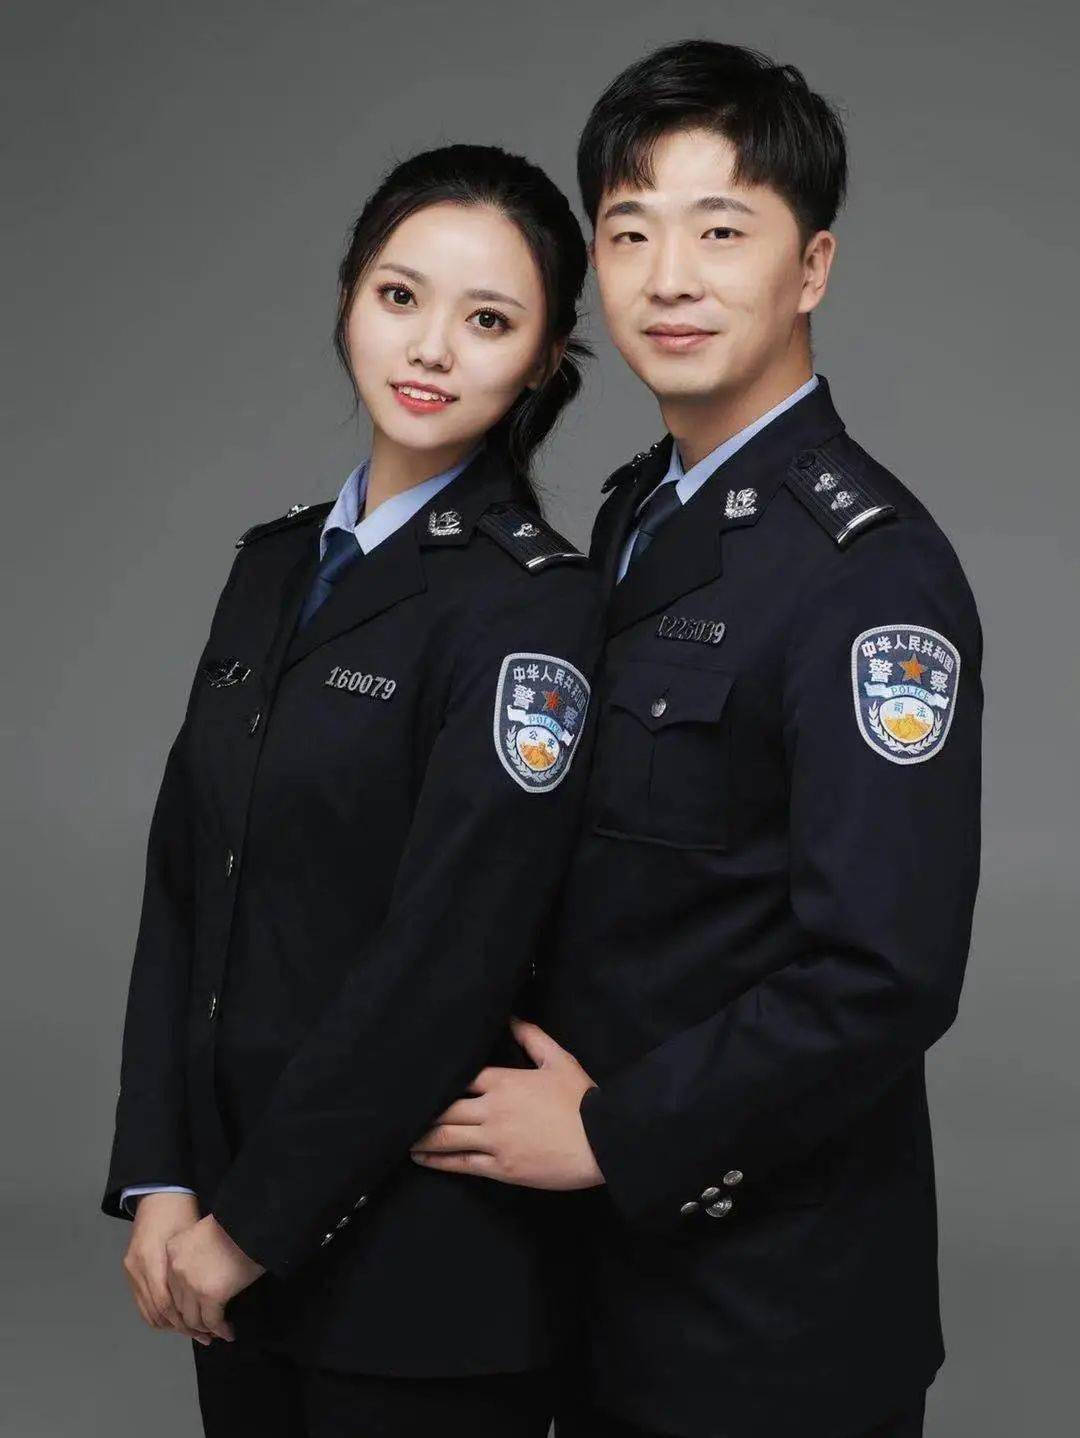 警察节专辑他们的浪漫是把警服穿成一辈子的情侣装